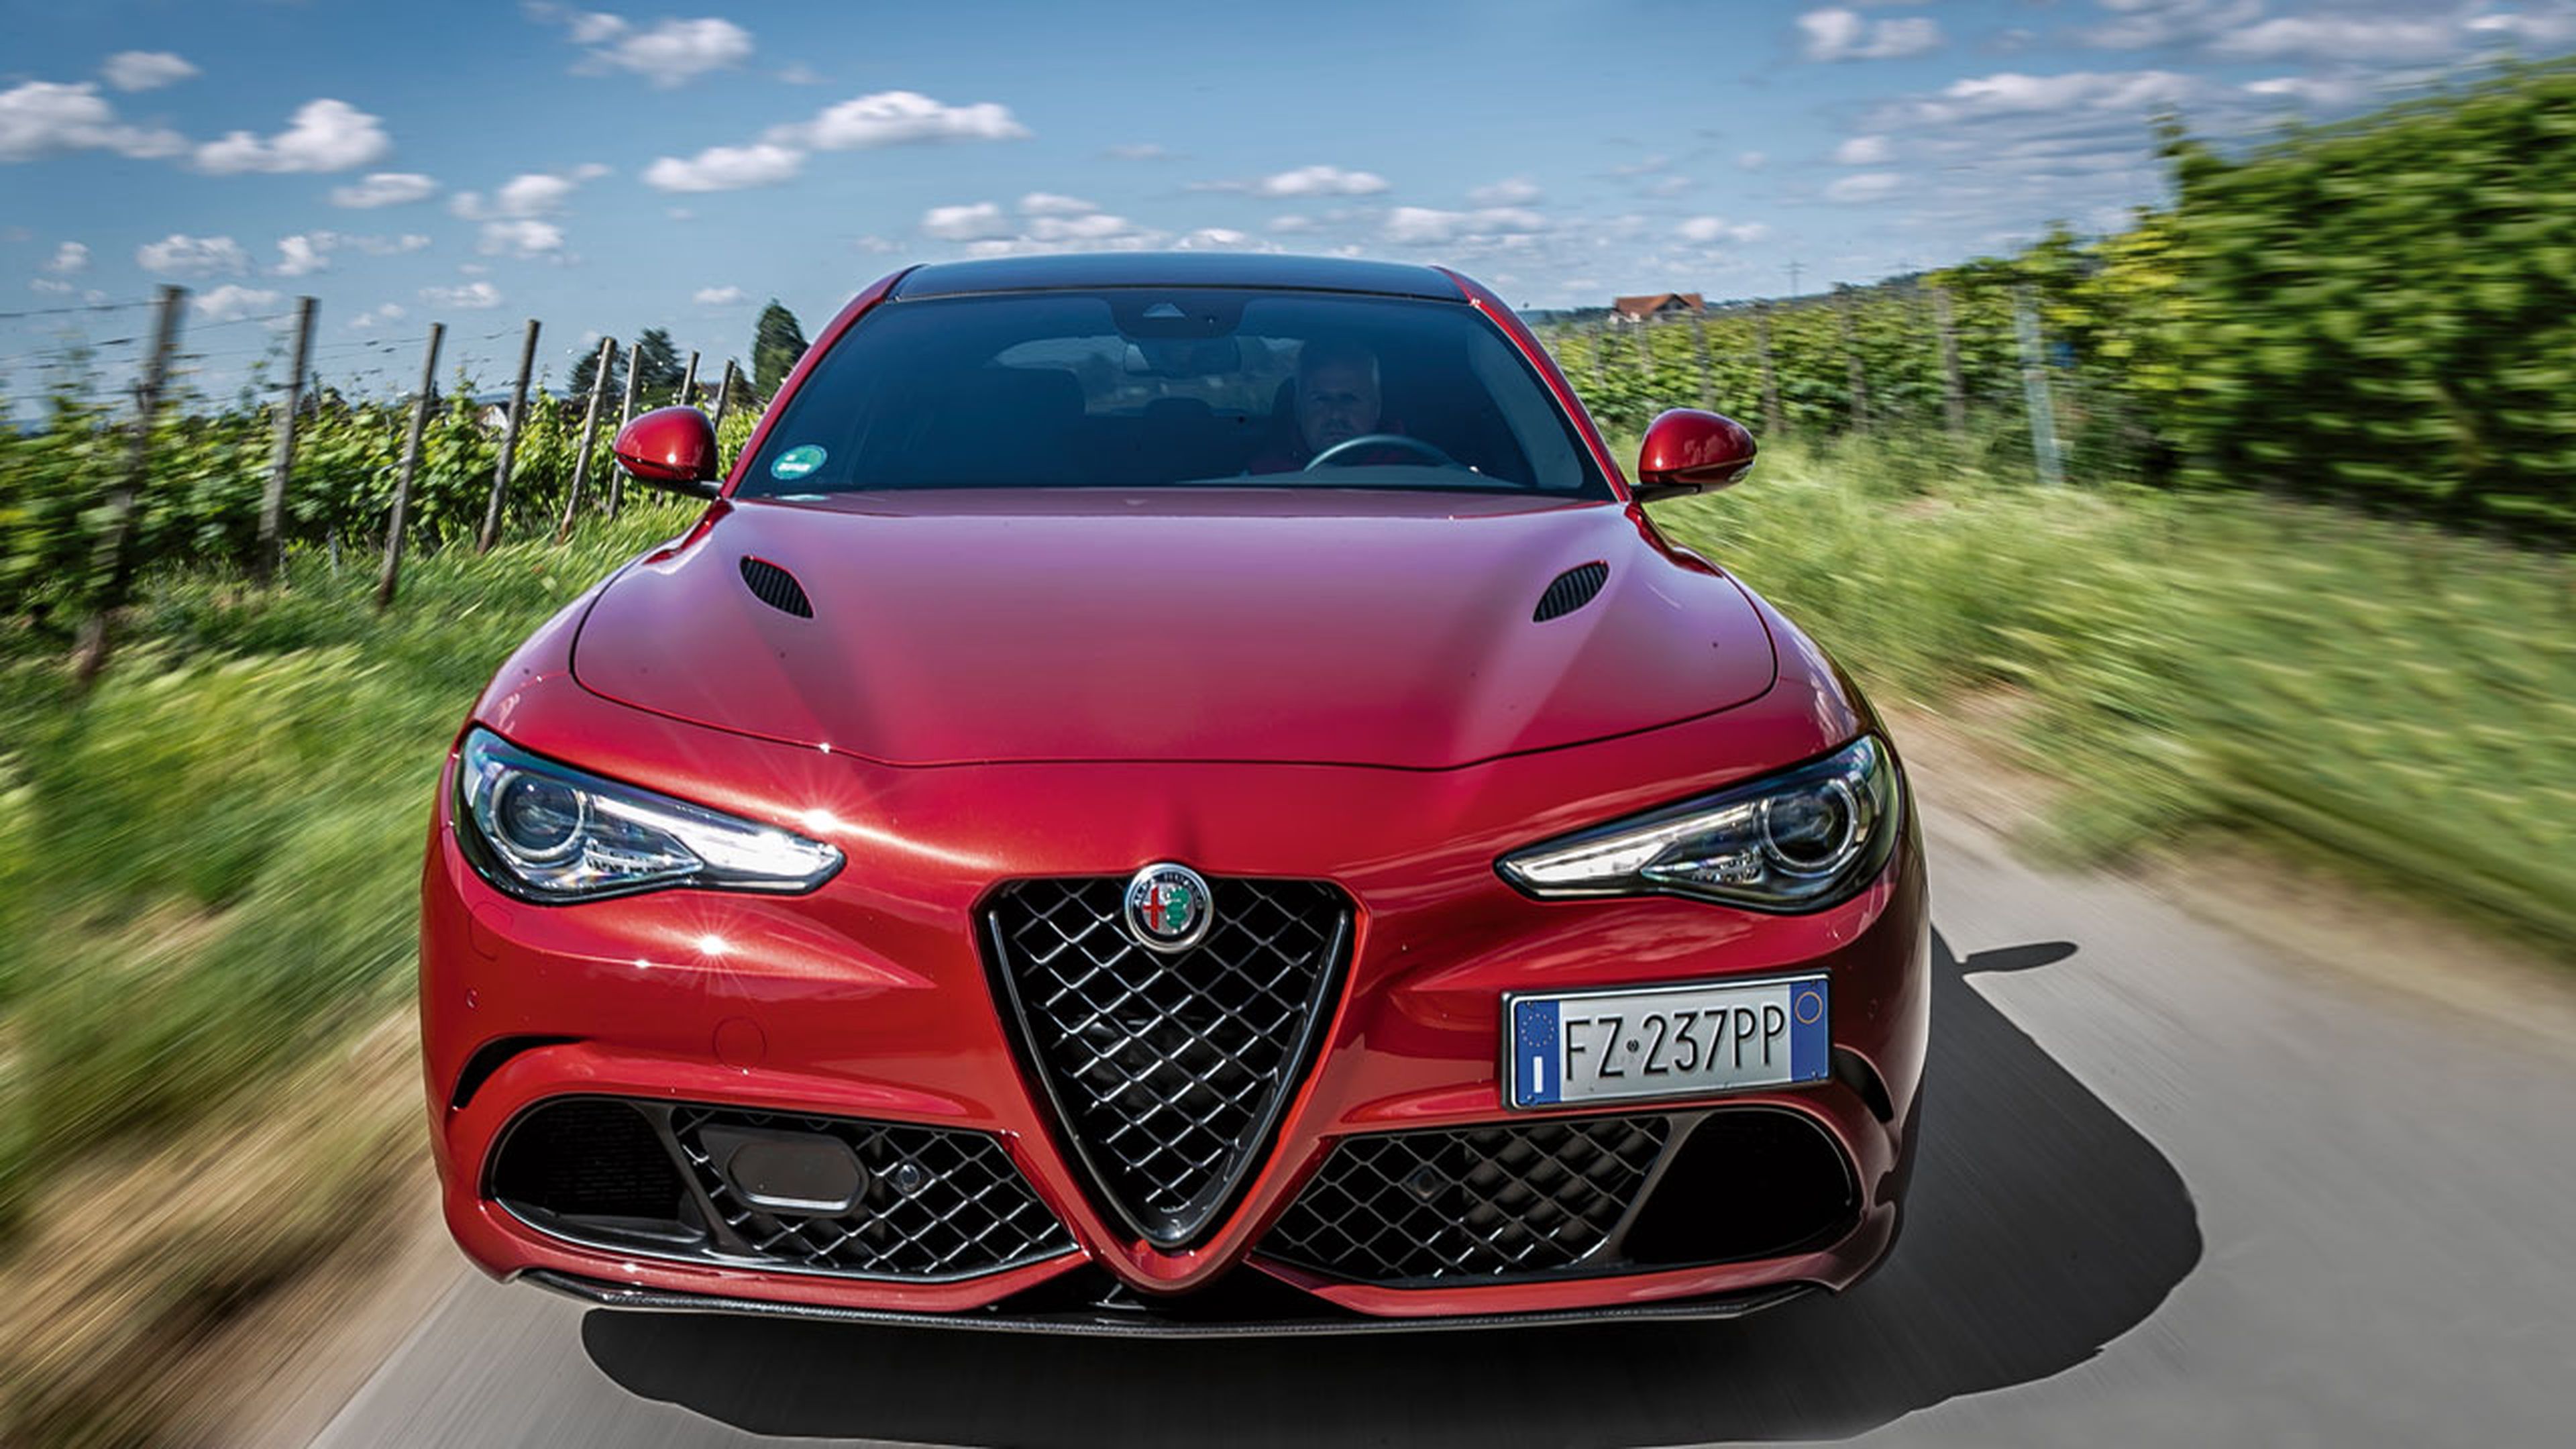 Comparativa: Alfa Romeo Stelvio frente a Giulia Quadrifoglio 2020